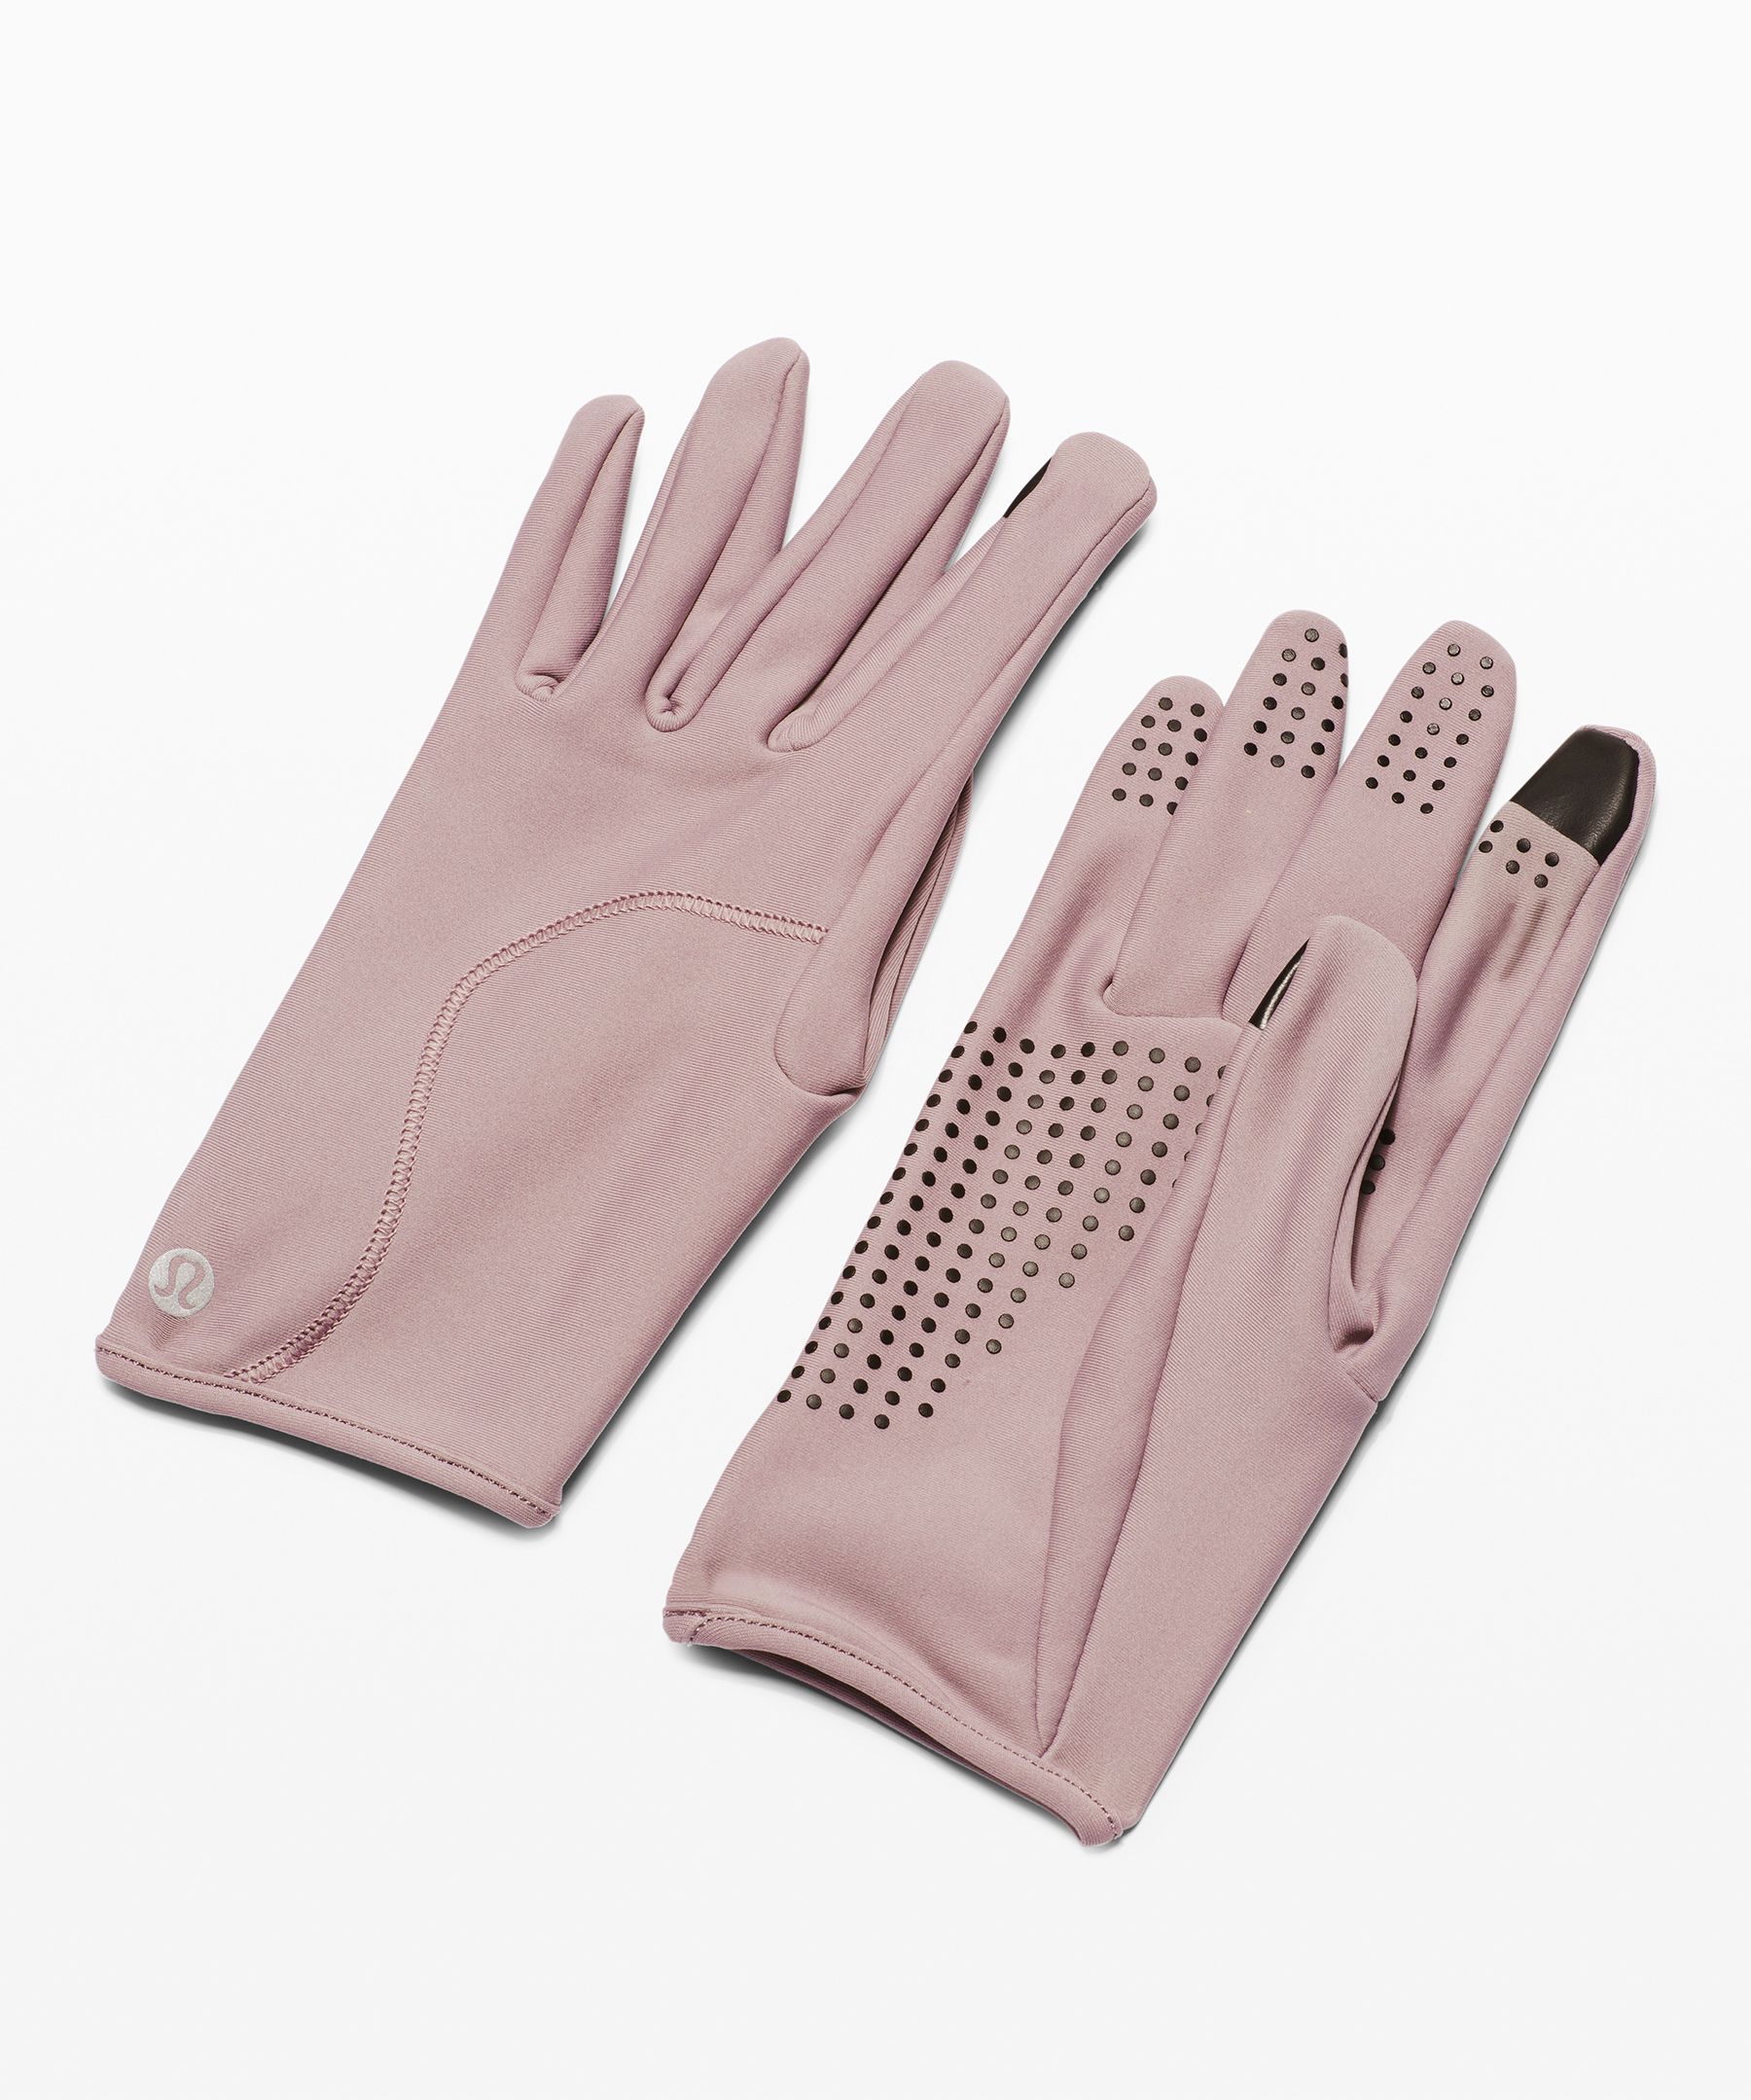 lululemon women's gloves